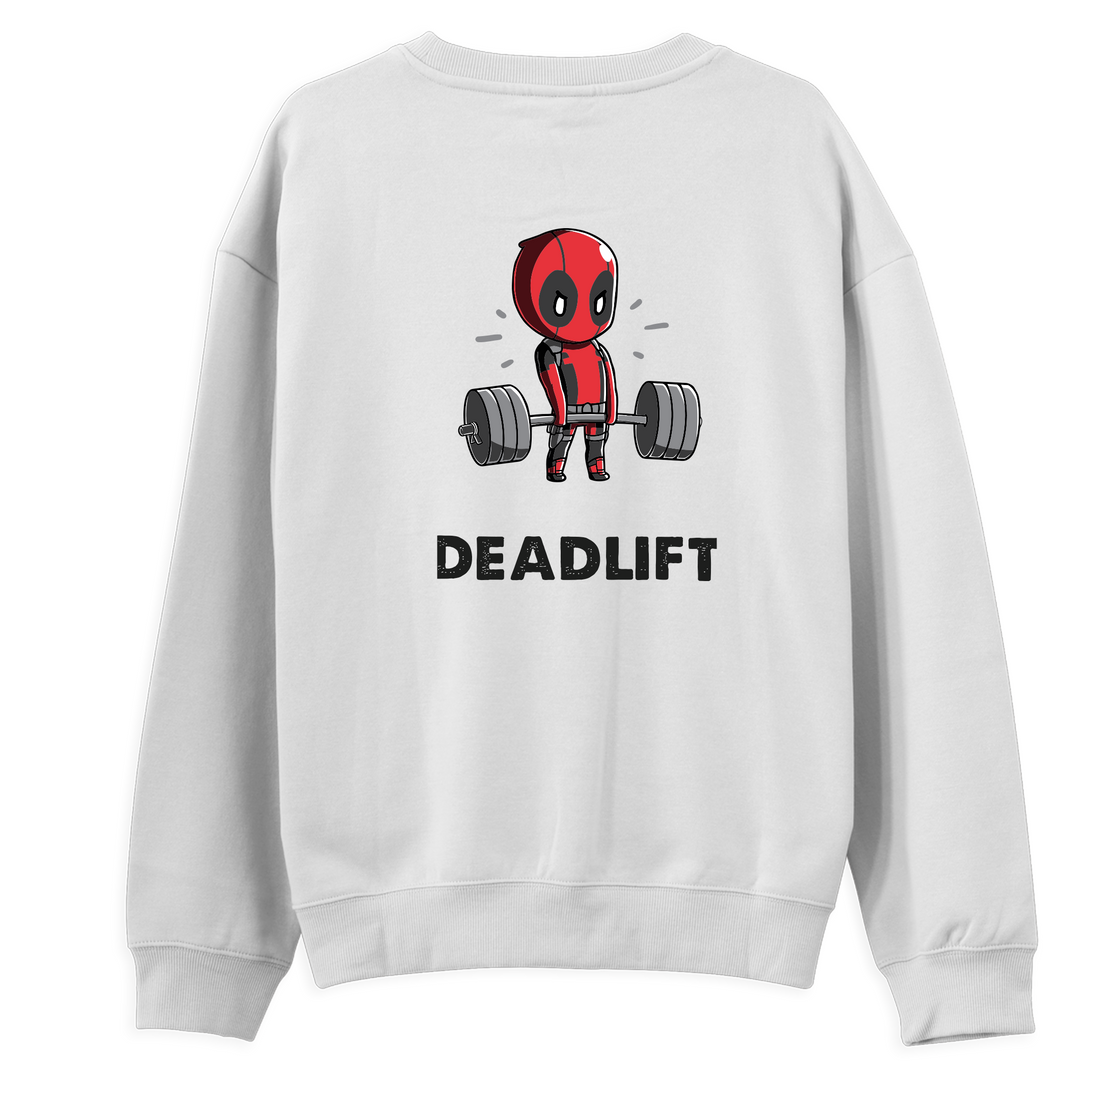 Deadlift - Sweatshirt